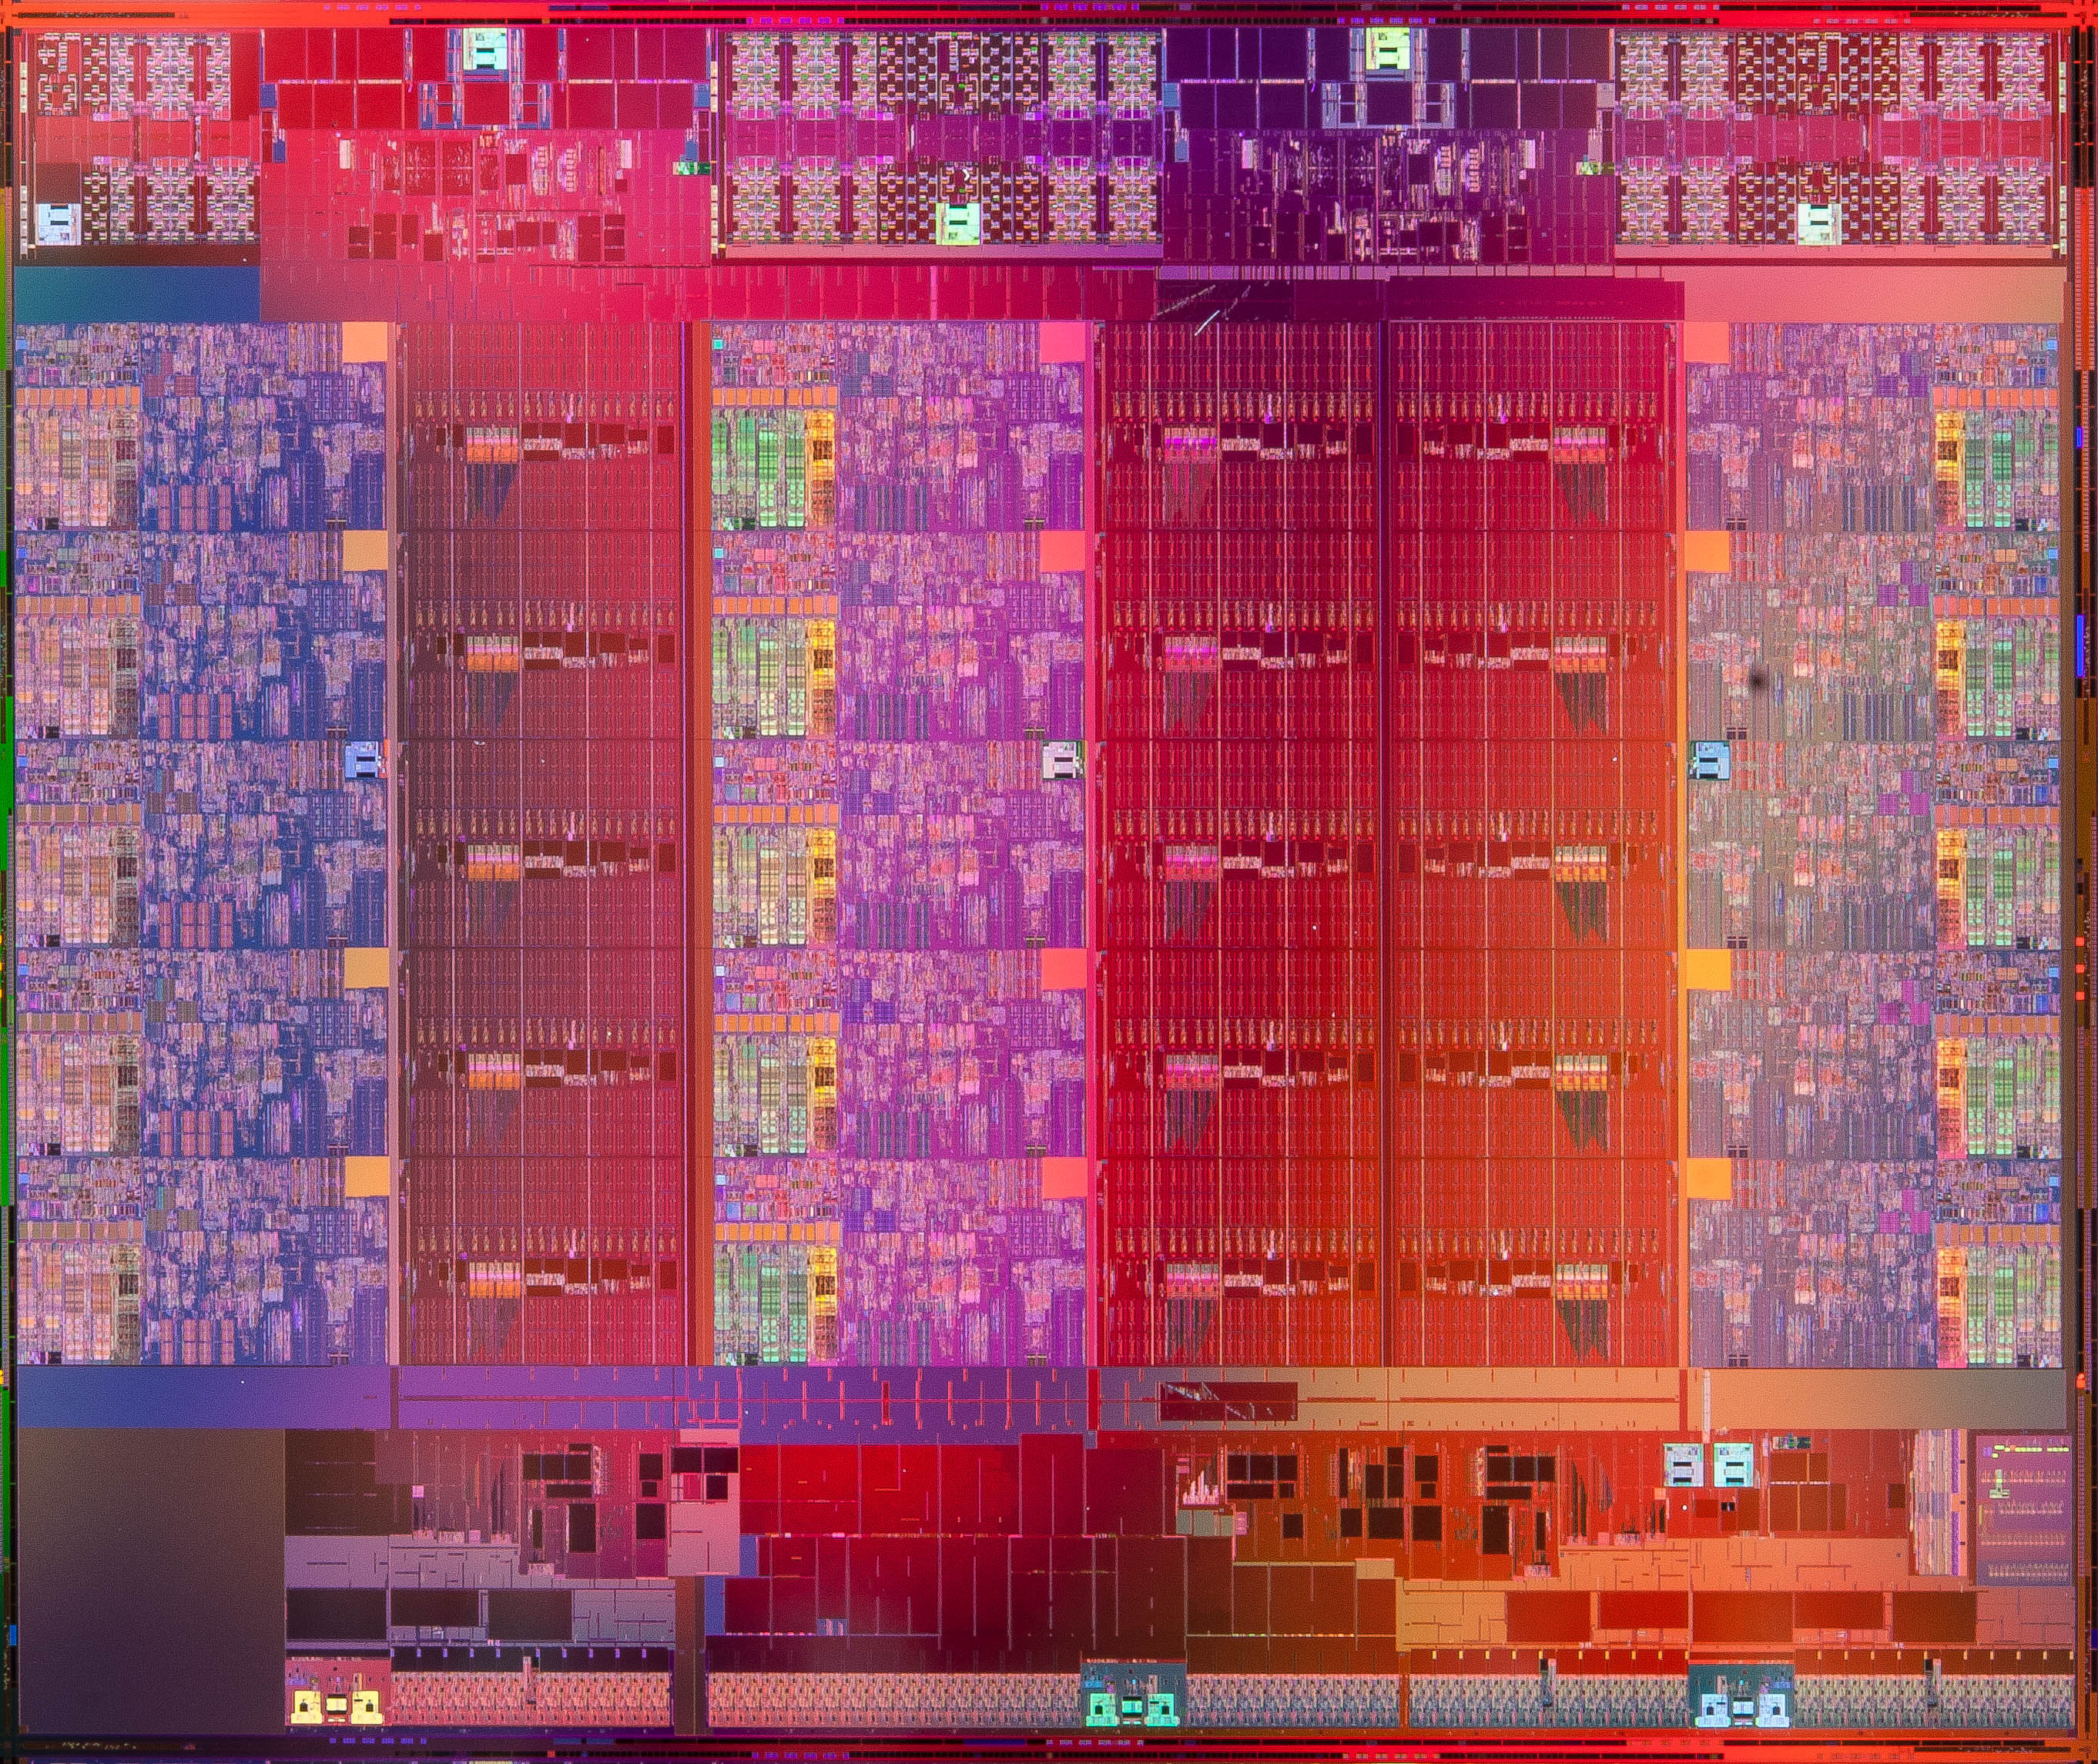 _images/Xeon-e7v2_die-full.jpg